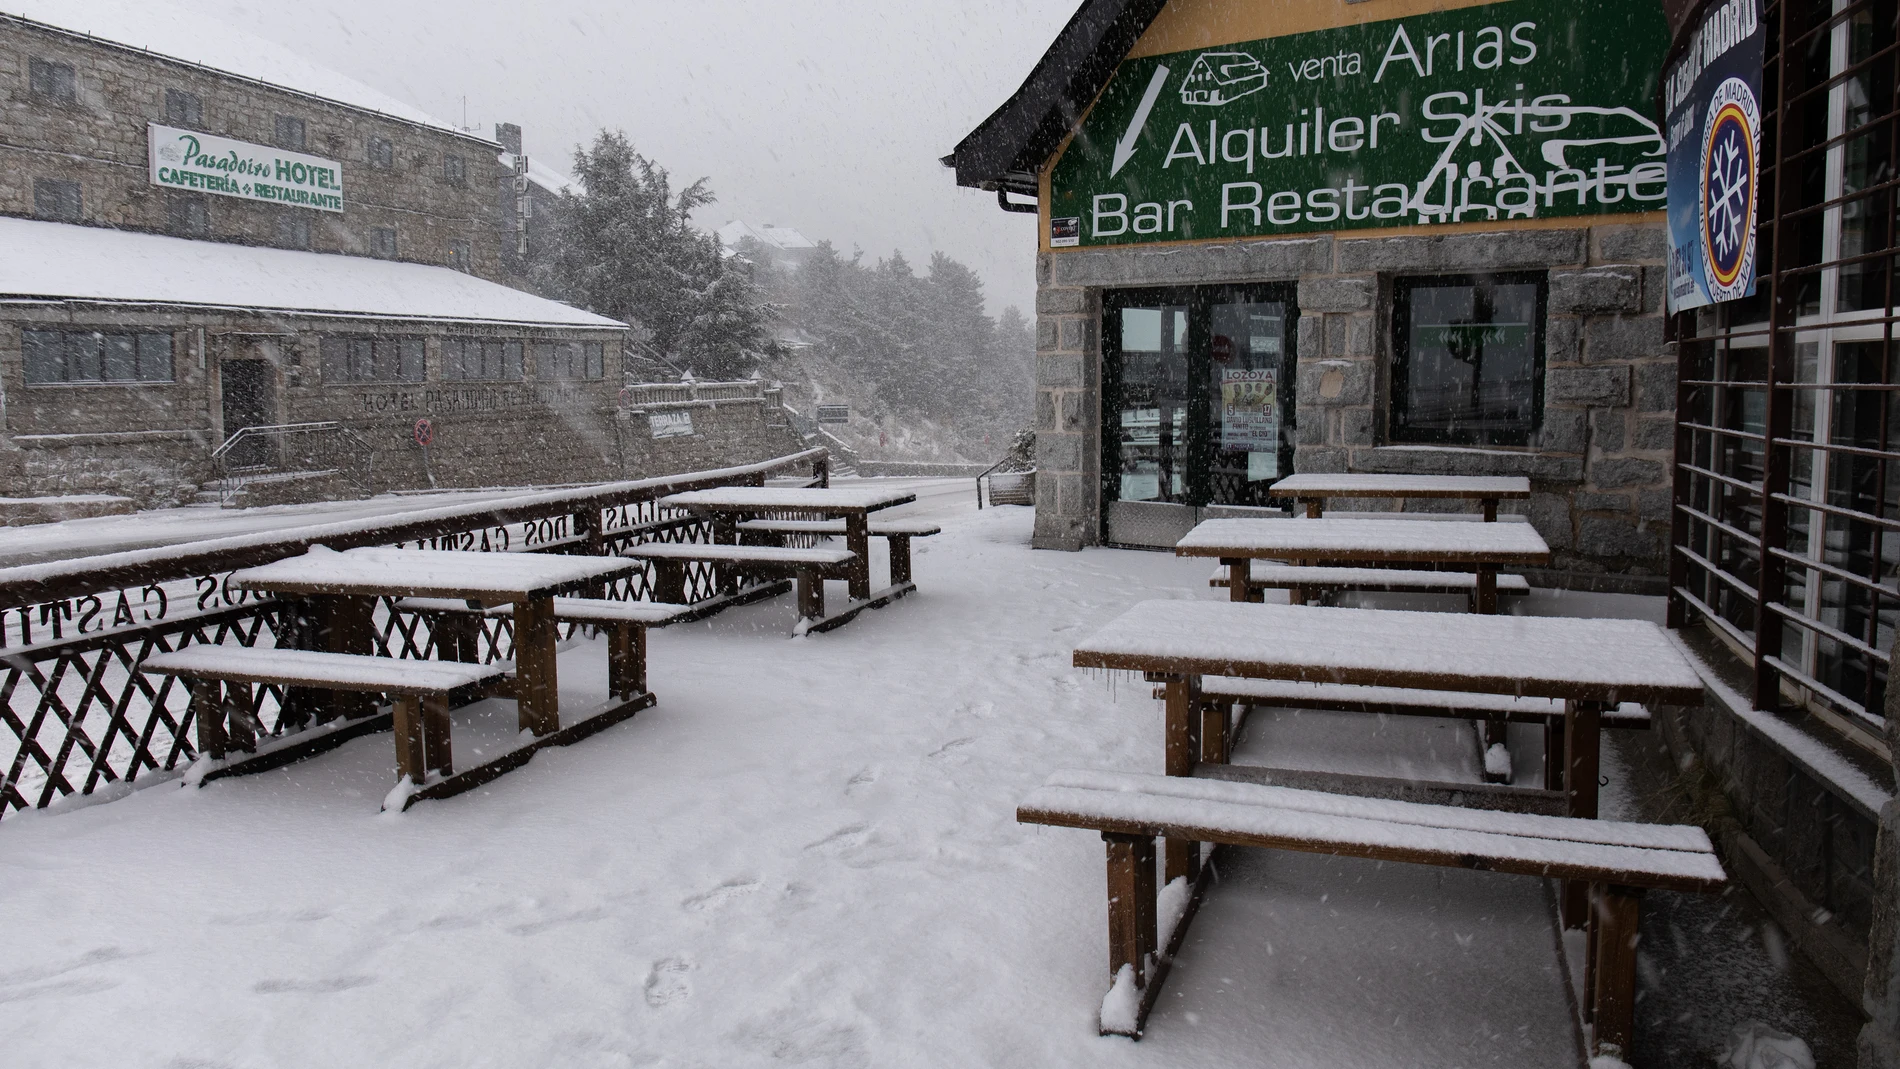 Un bar-restaurante afectado por el temporal de nieve en el Puerto de Navacerrada